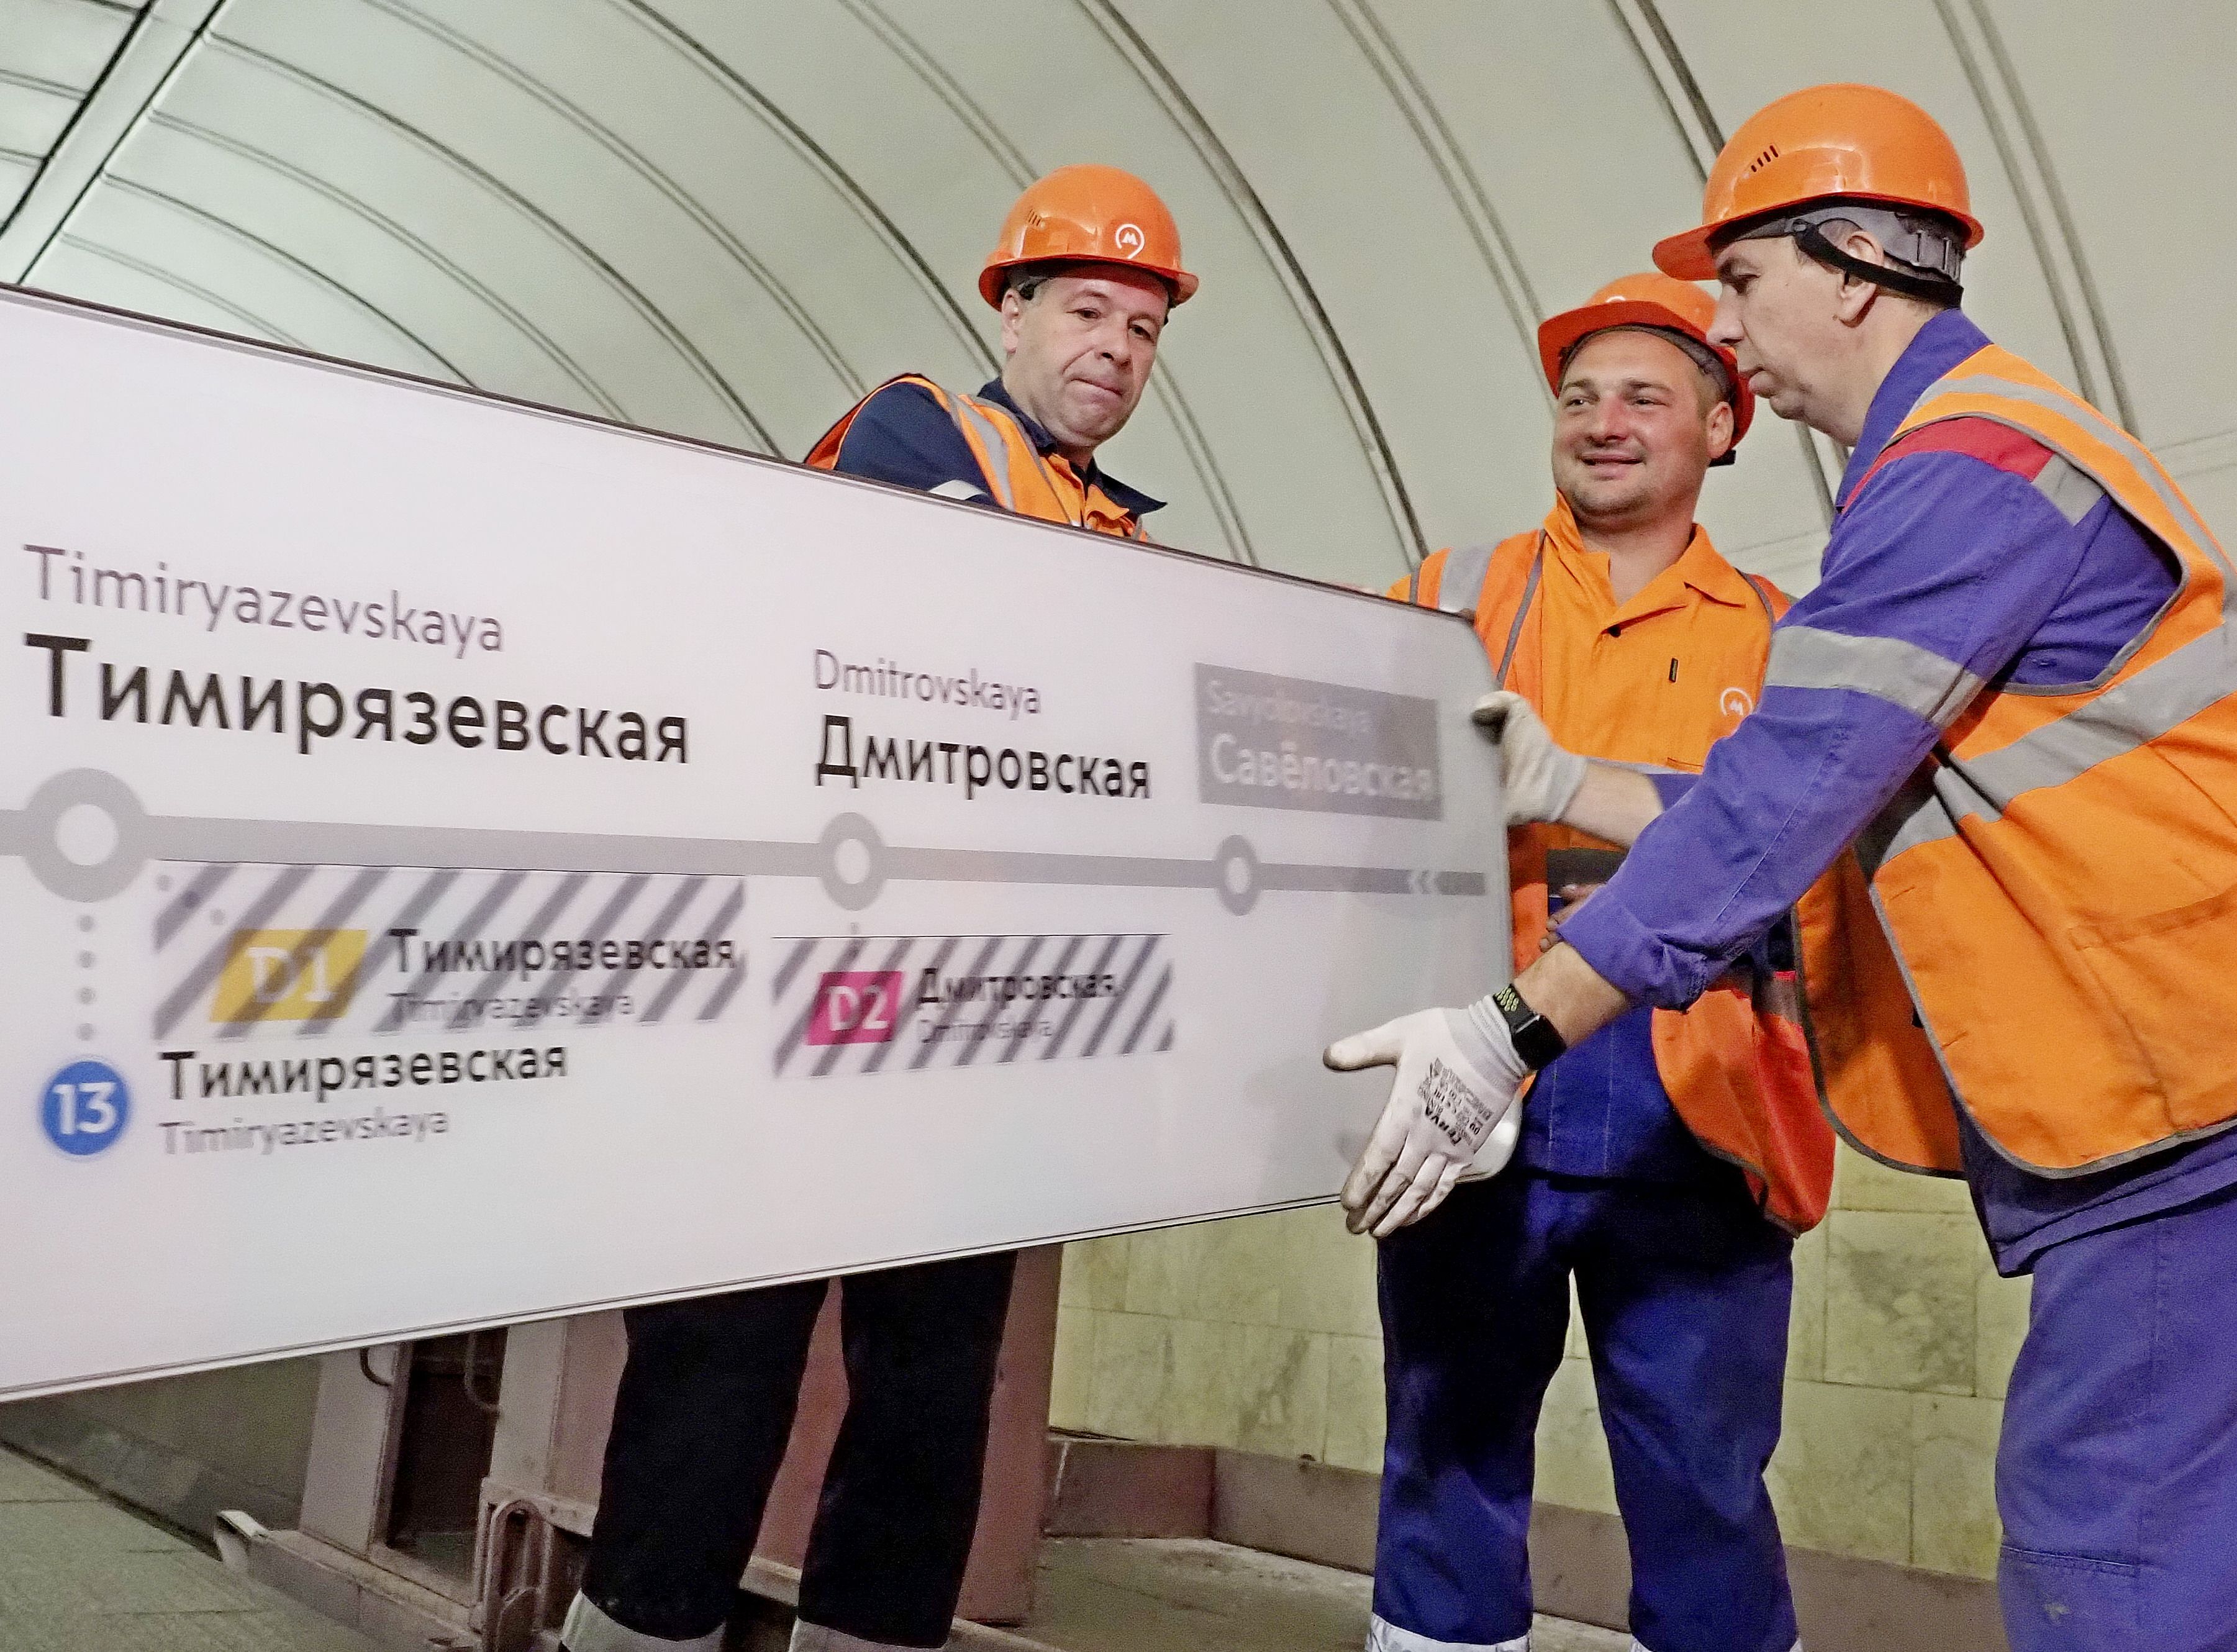 МЦД и будущие станции разнообразили приложение «Метро Москвы»